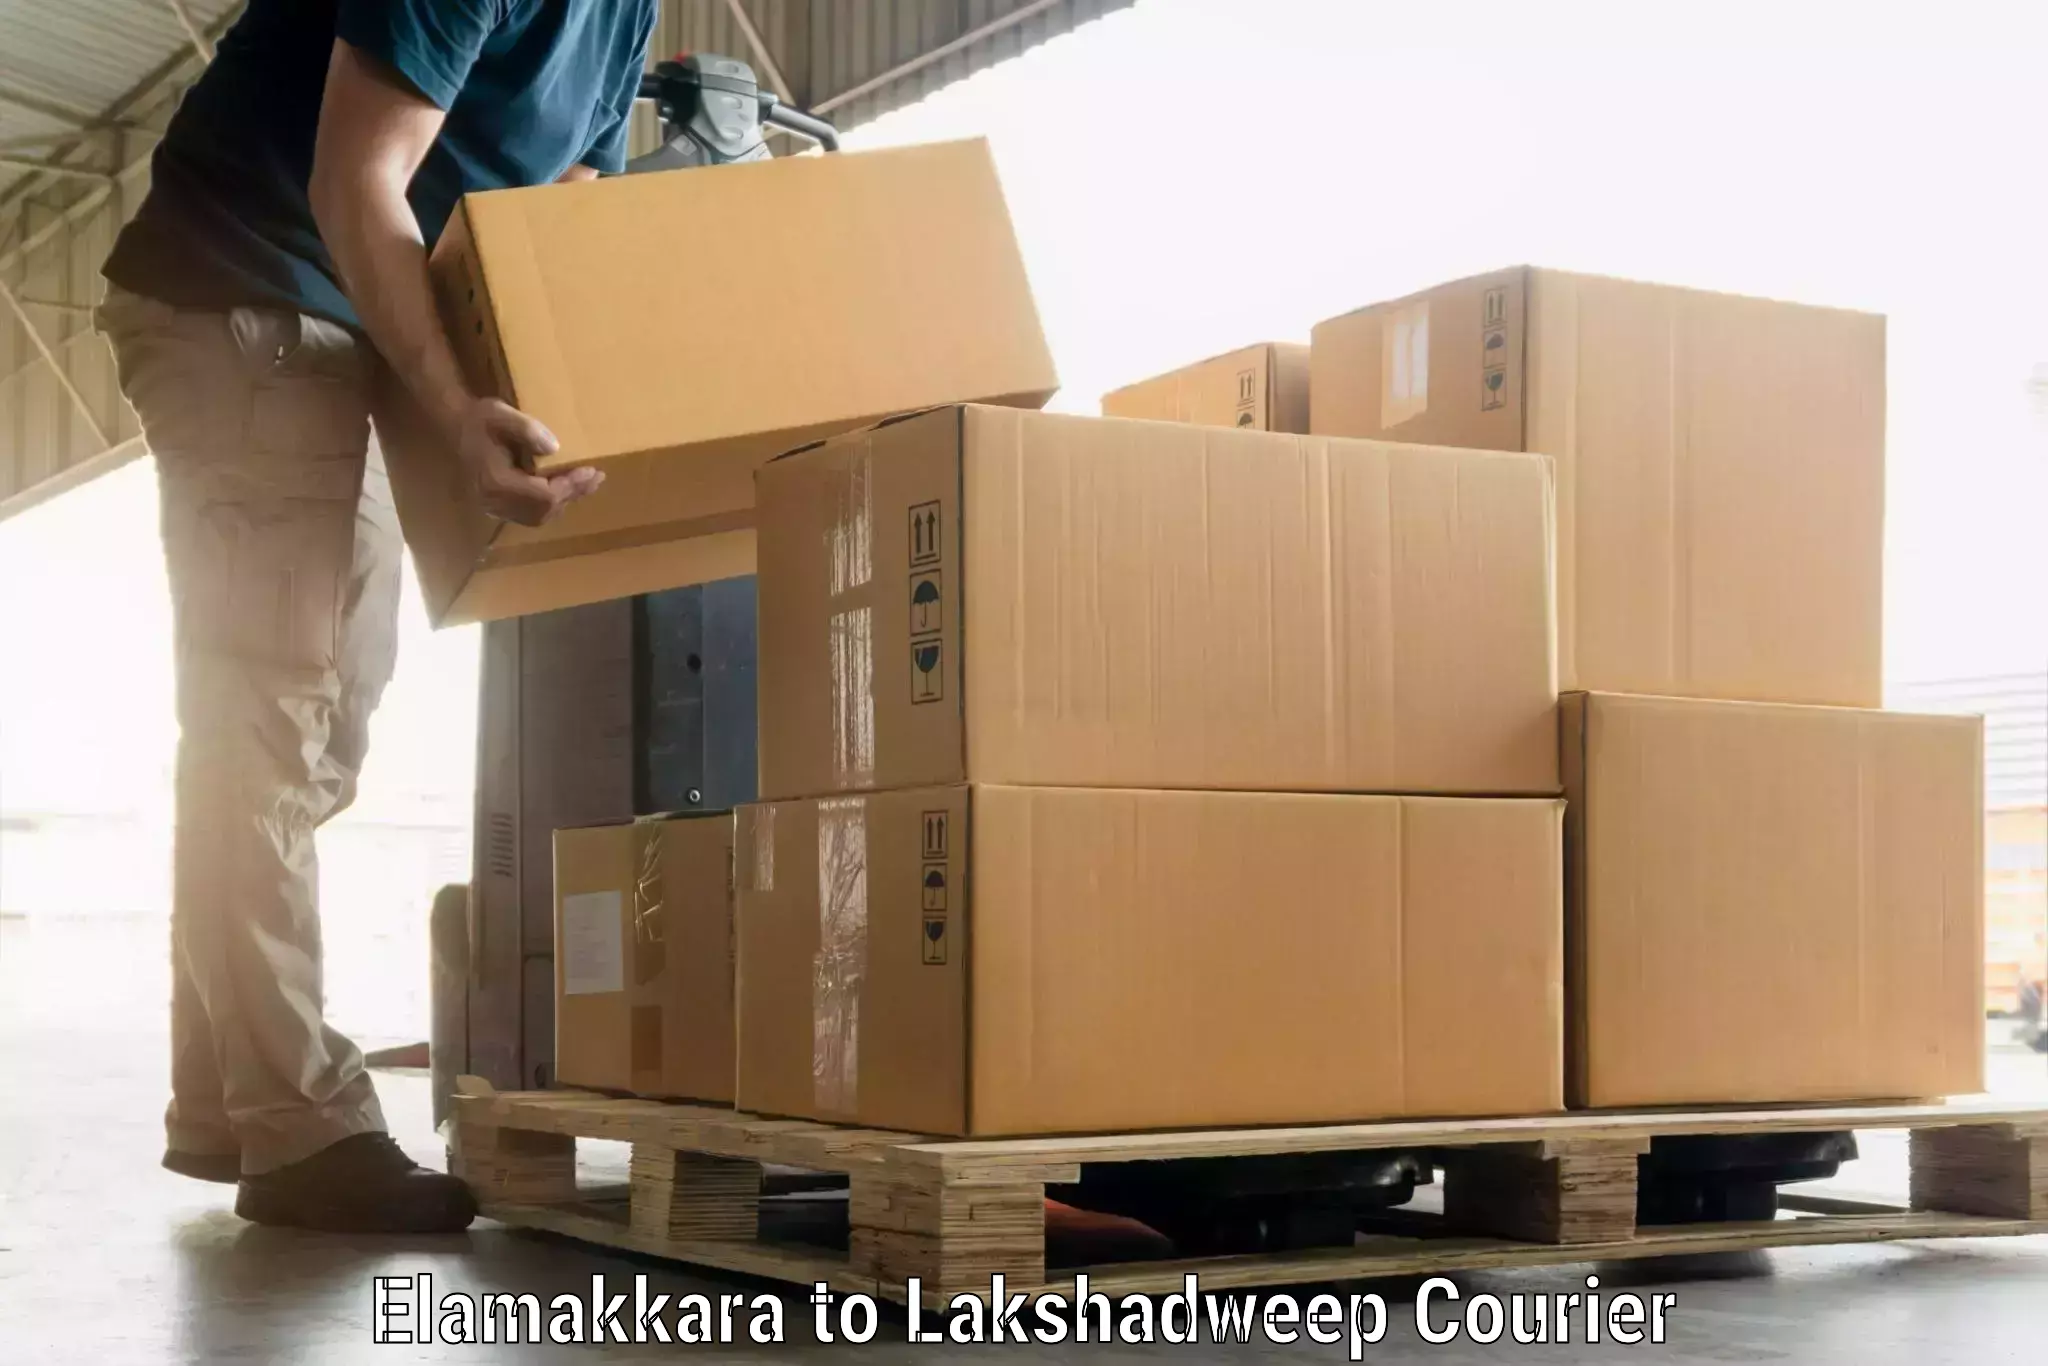 Automated luggage transport Elamakkara to Lakshadweep